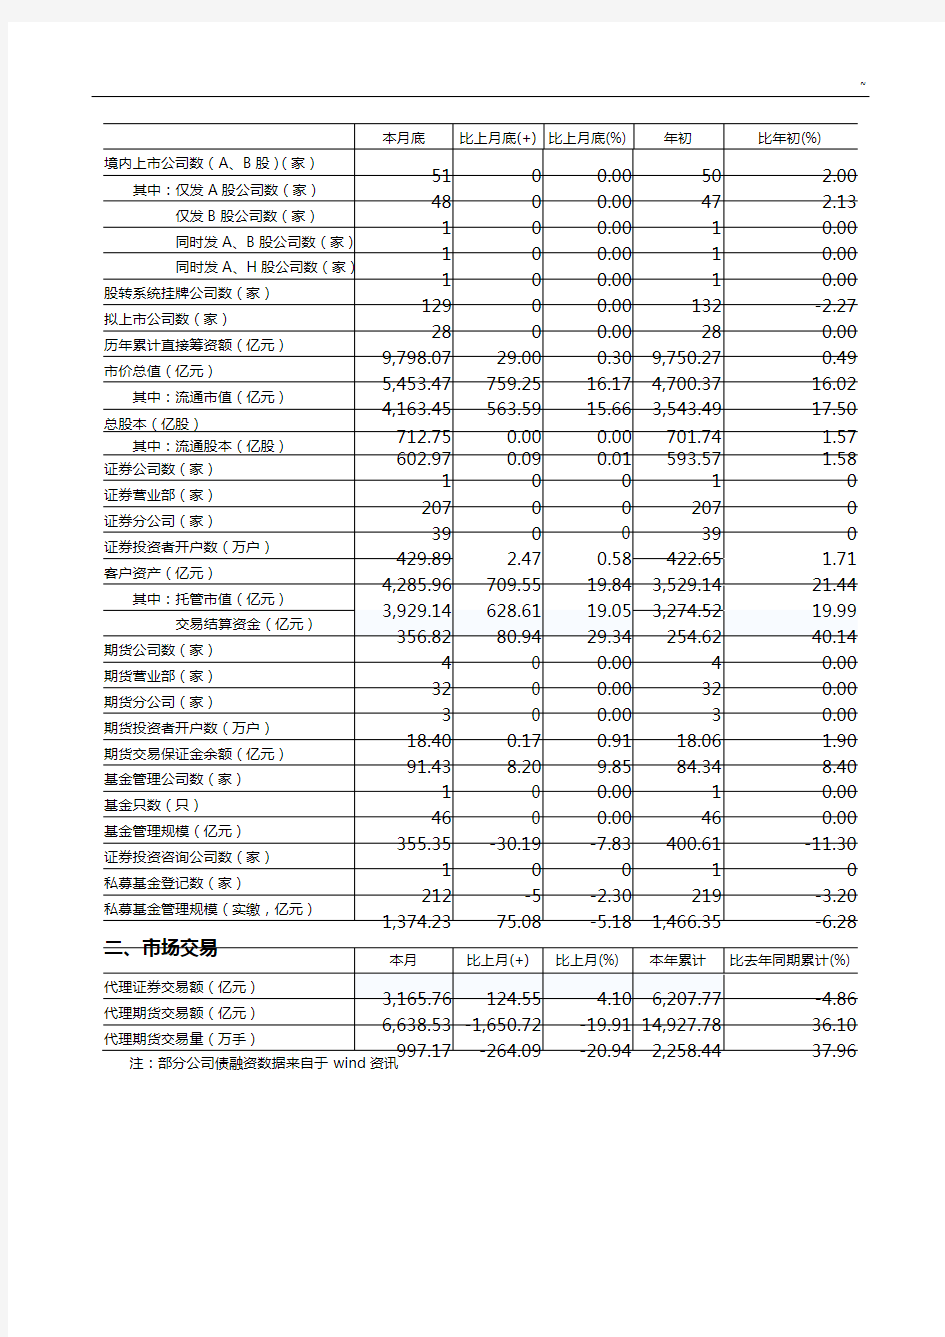 2017年度6月重庆证券期货市场统计报告归纳